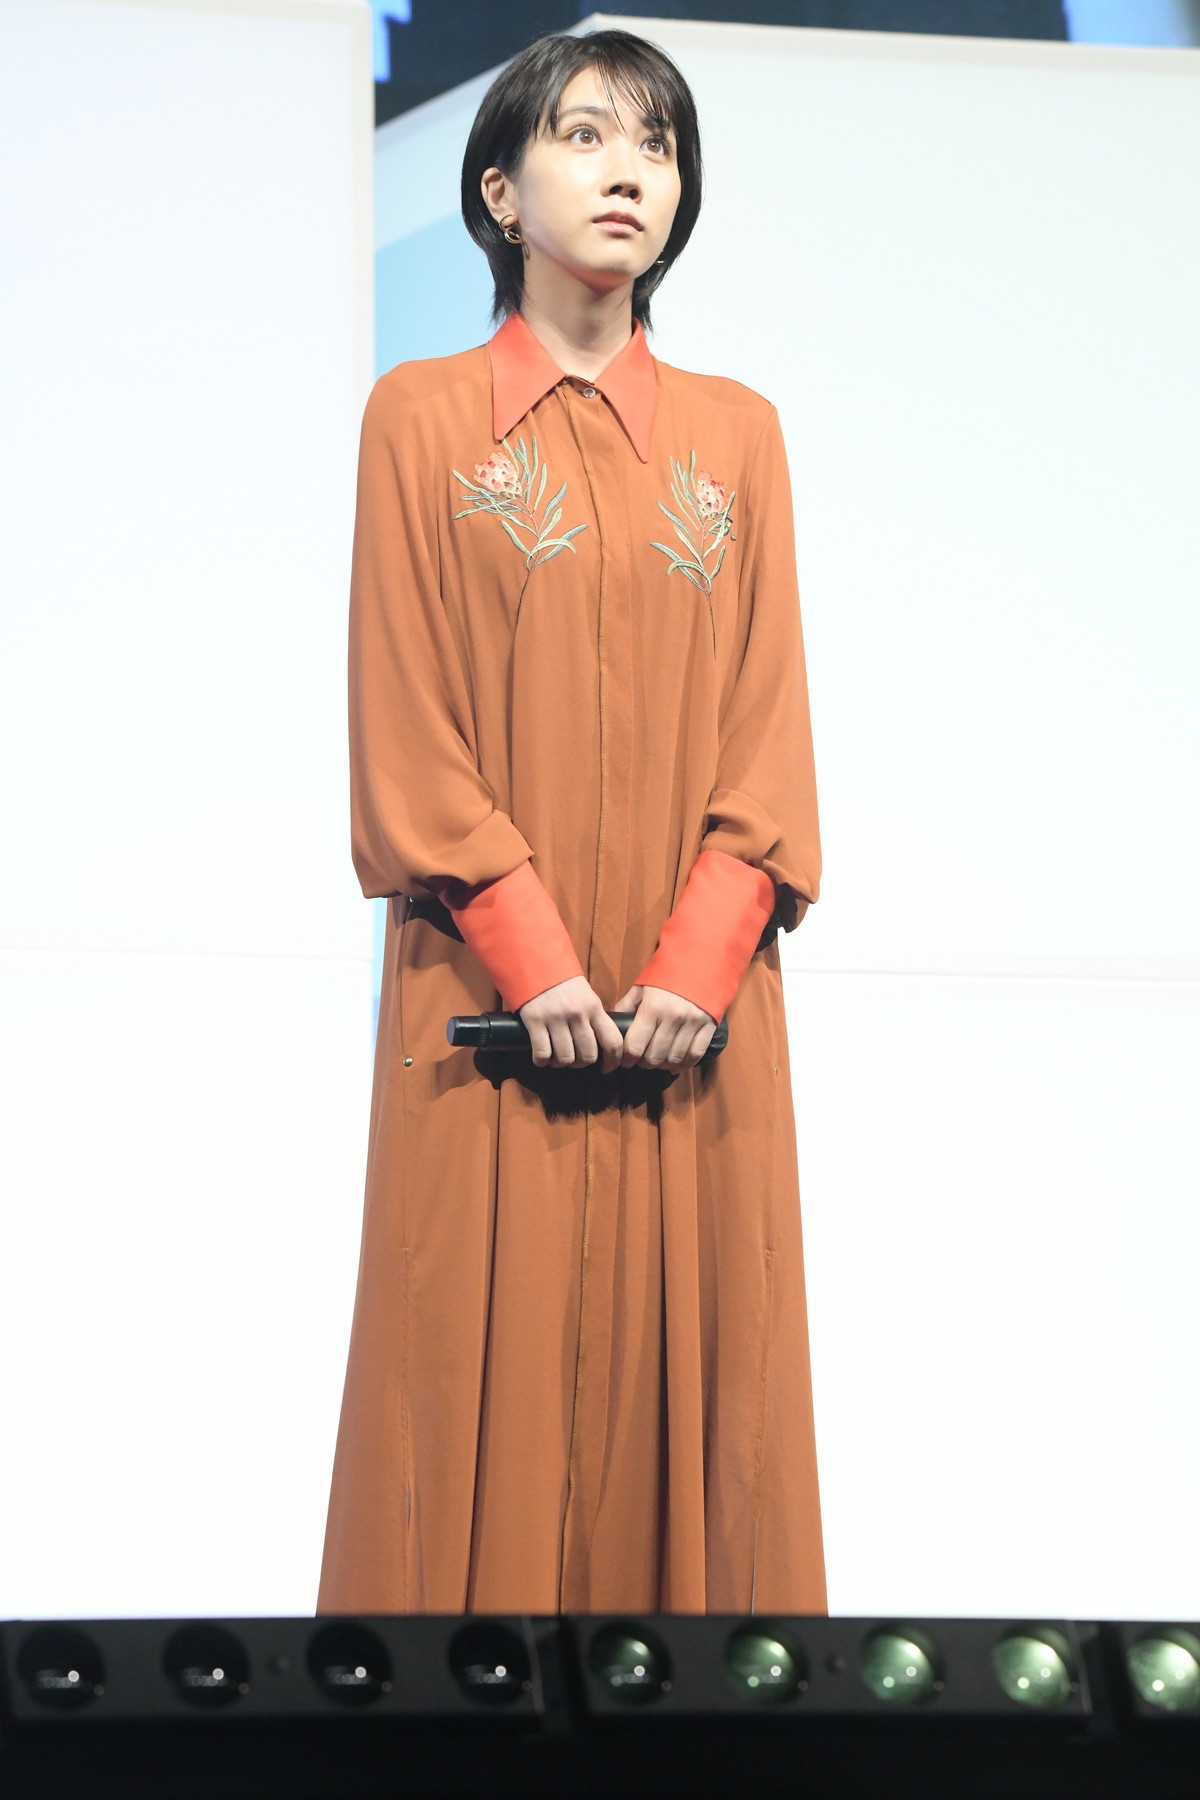 池田エライザ、シックなミニ丈衣装で会場魅了　スマホ撮影映画に意欲「私も挑戦してみたい」